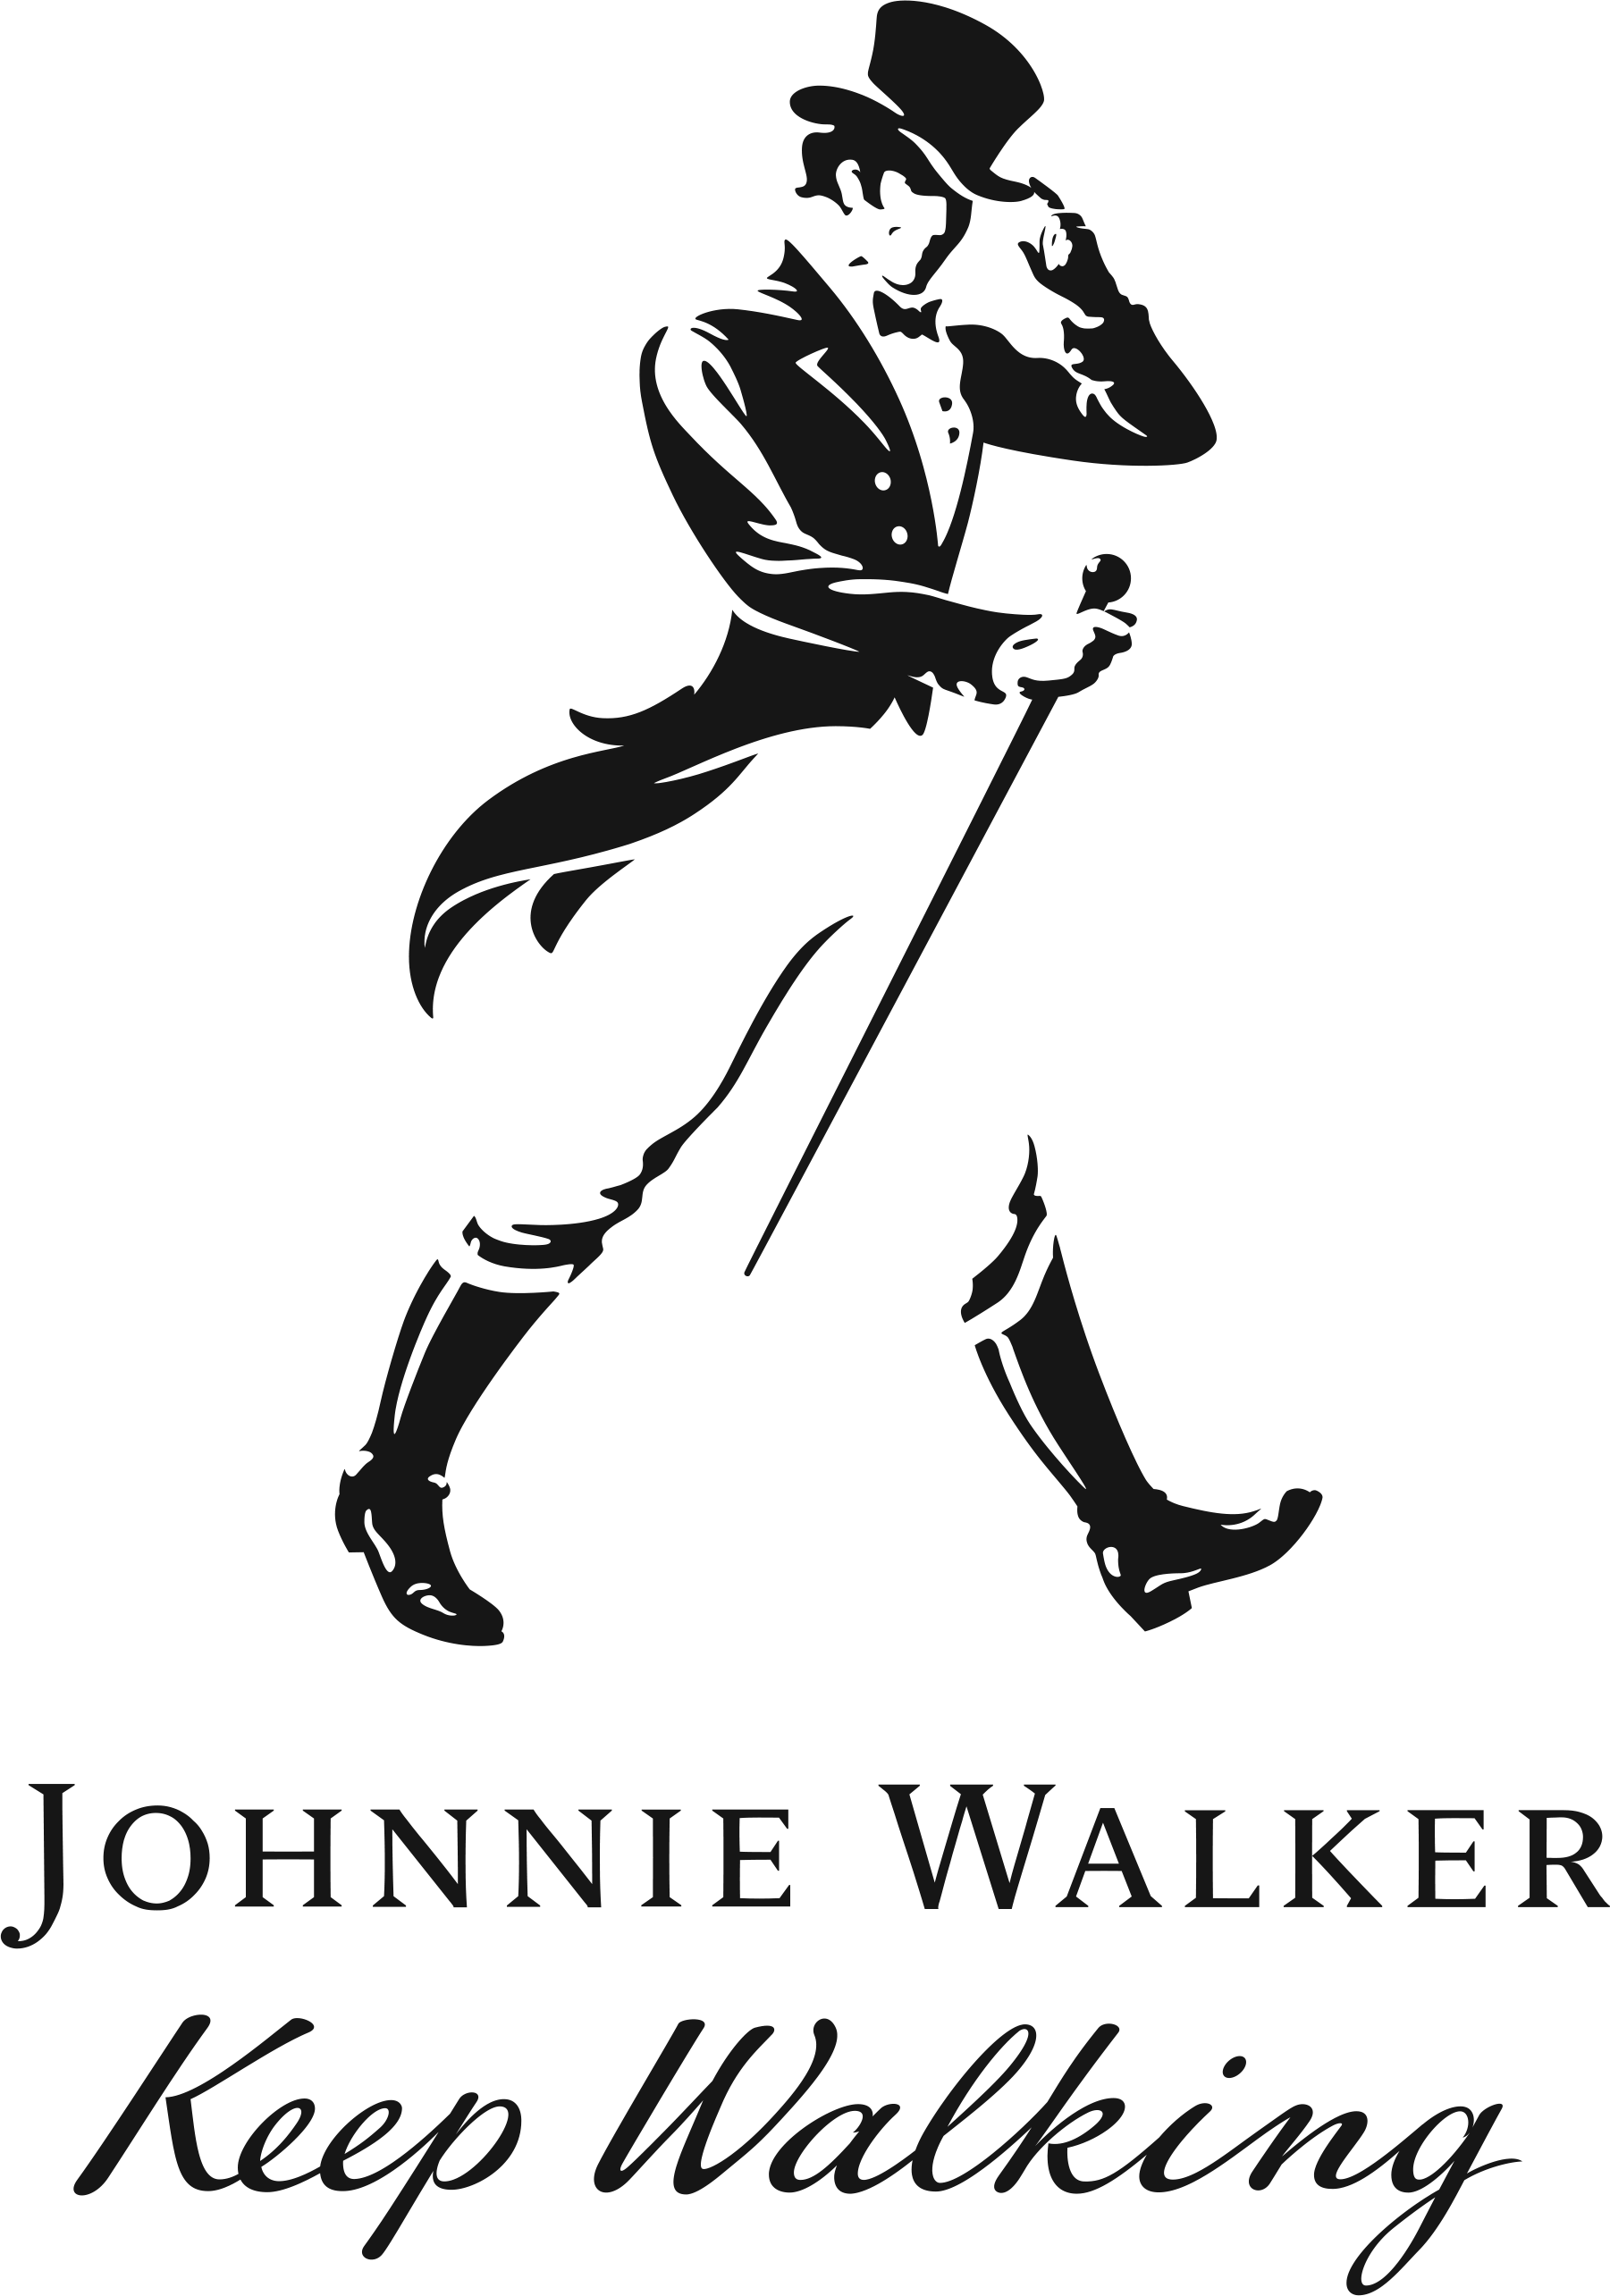 Copy of Johnnie Walker